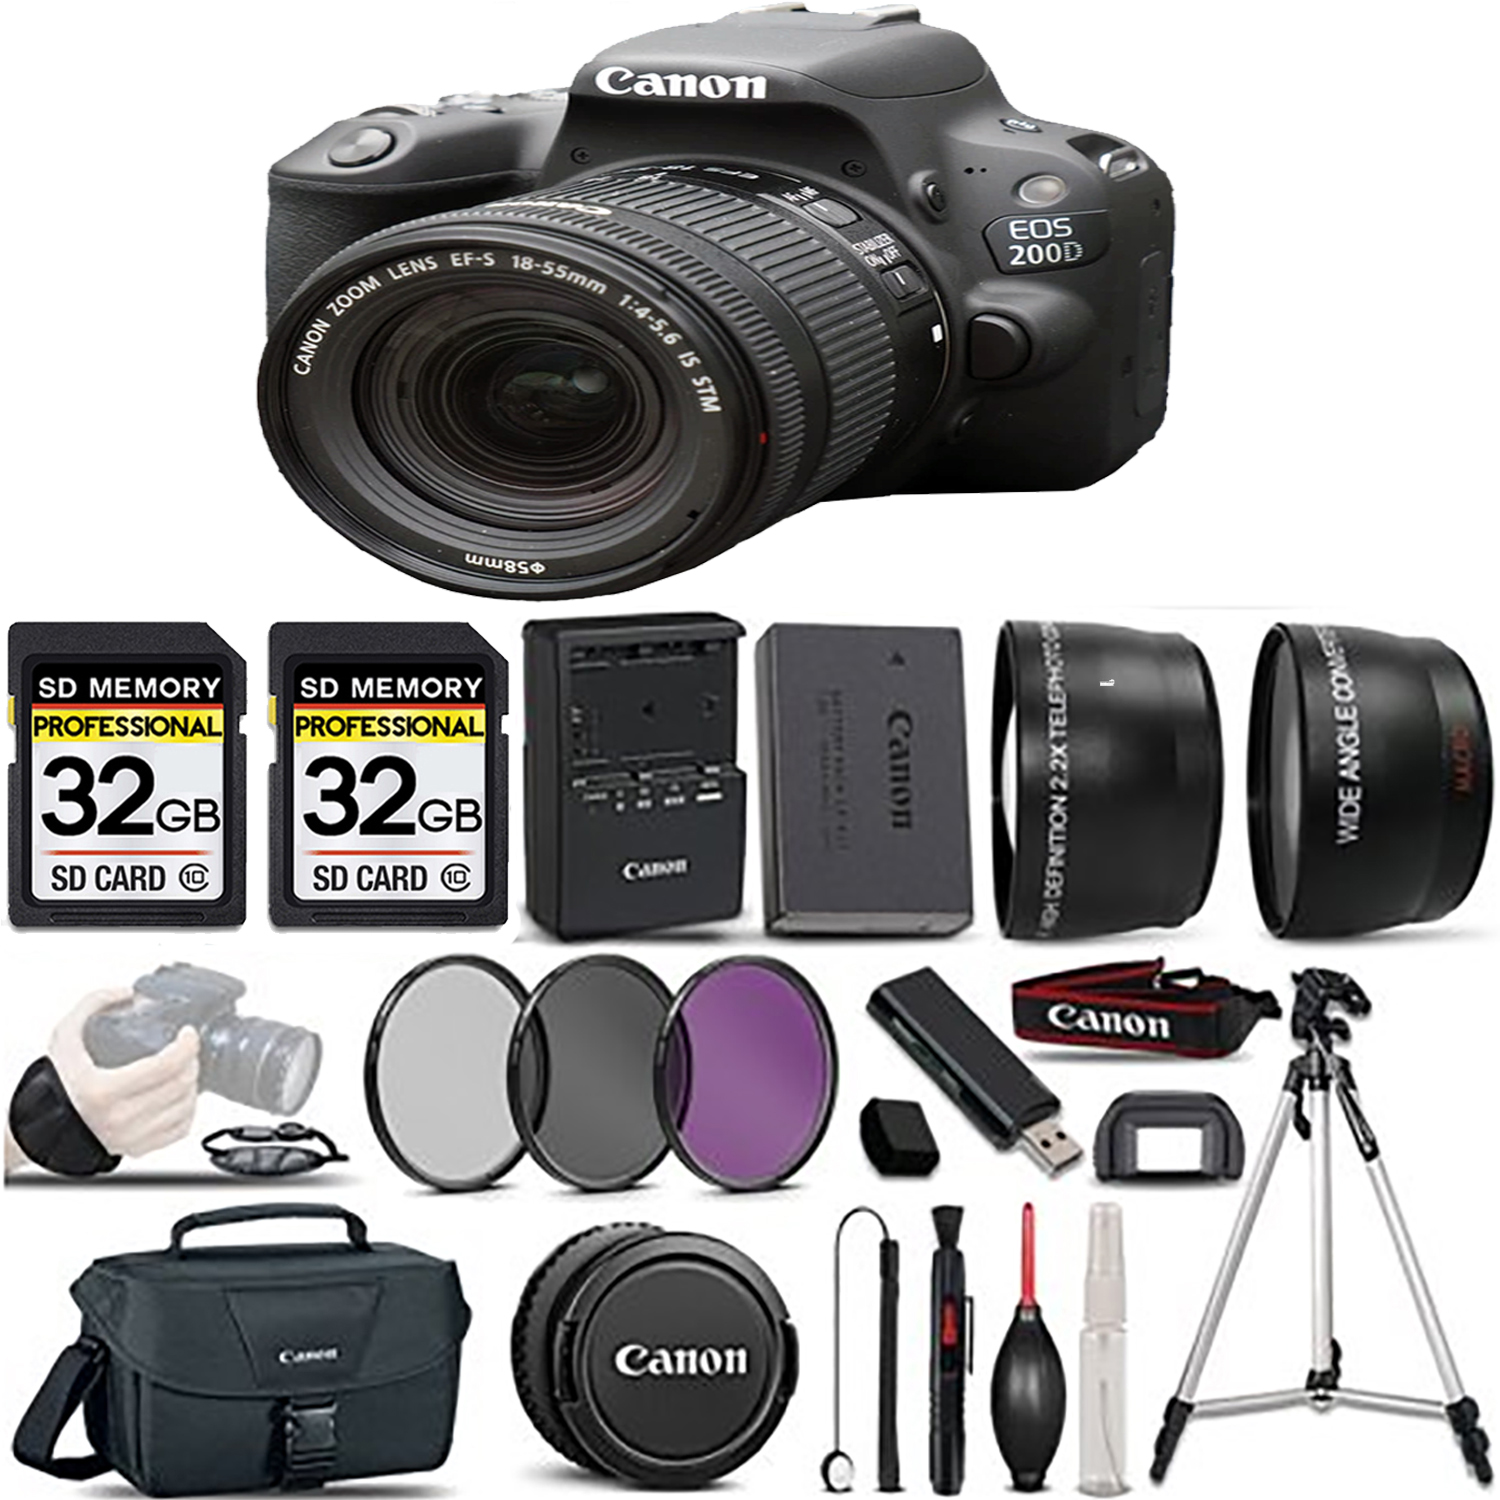 EOS Rebel 200D DSLR Camera(Black) + 18-55mm STM Lens + 3 Piece Filter Set- Kit *FREE SHIPPING*